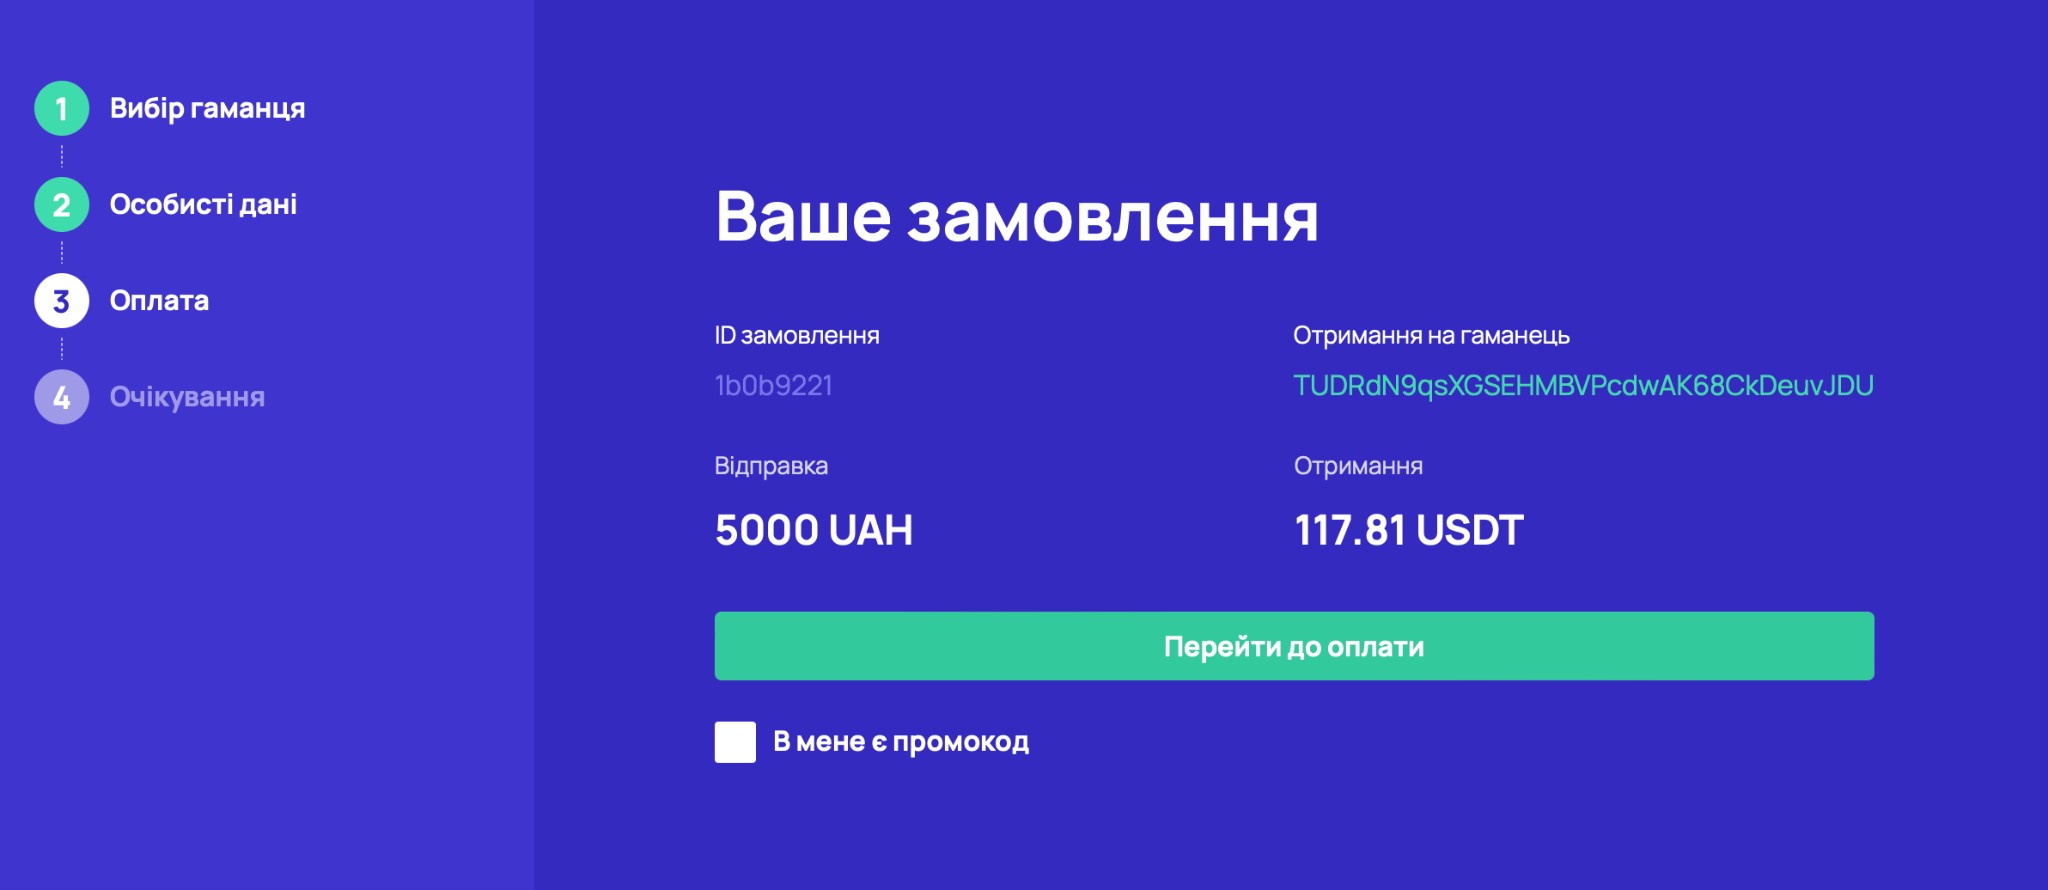 Як купити криптовалюту в Україні у 2022 році?